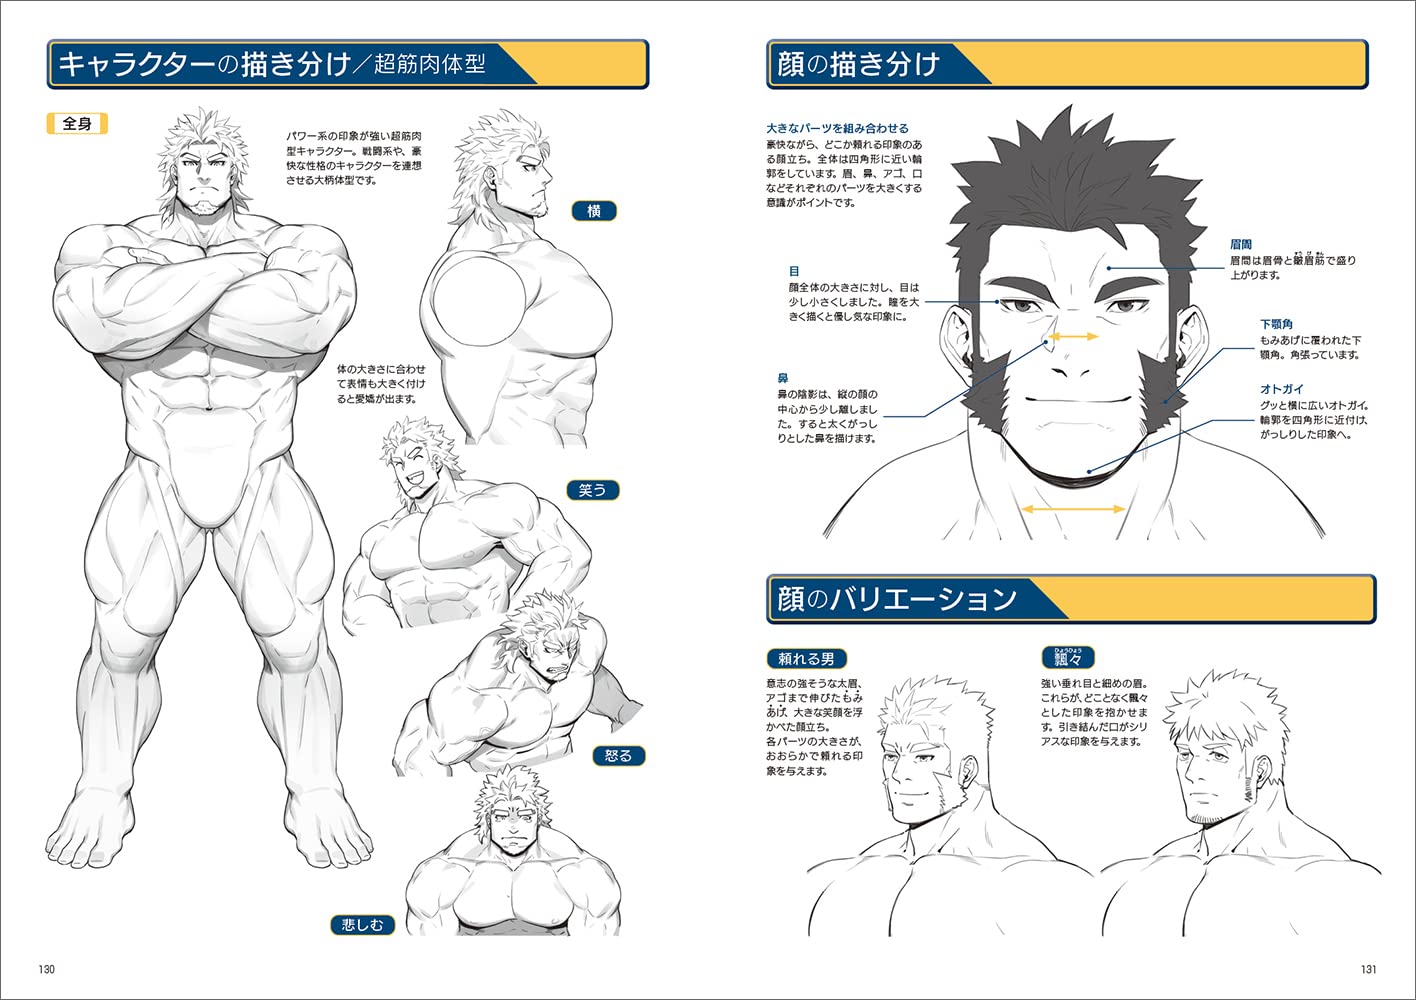 Anime manga bodybuilding added... - Anime manga bodybuilding